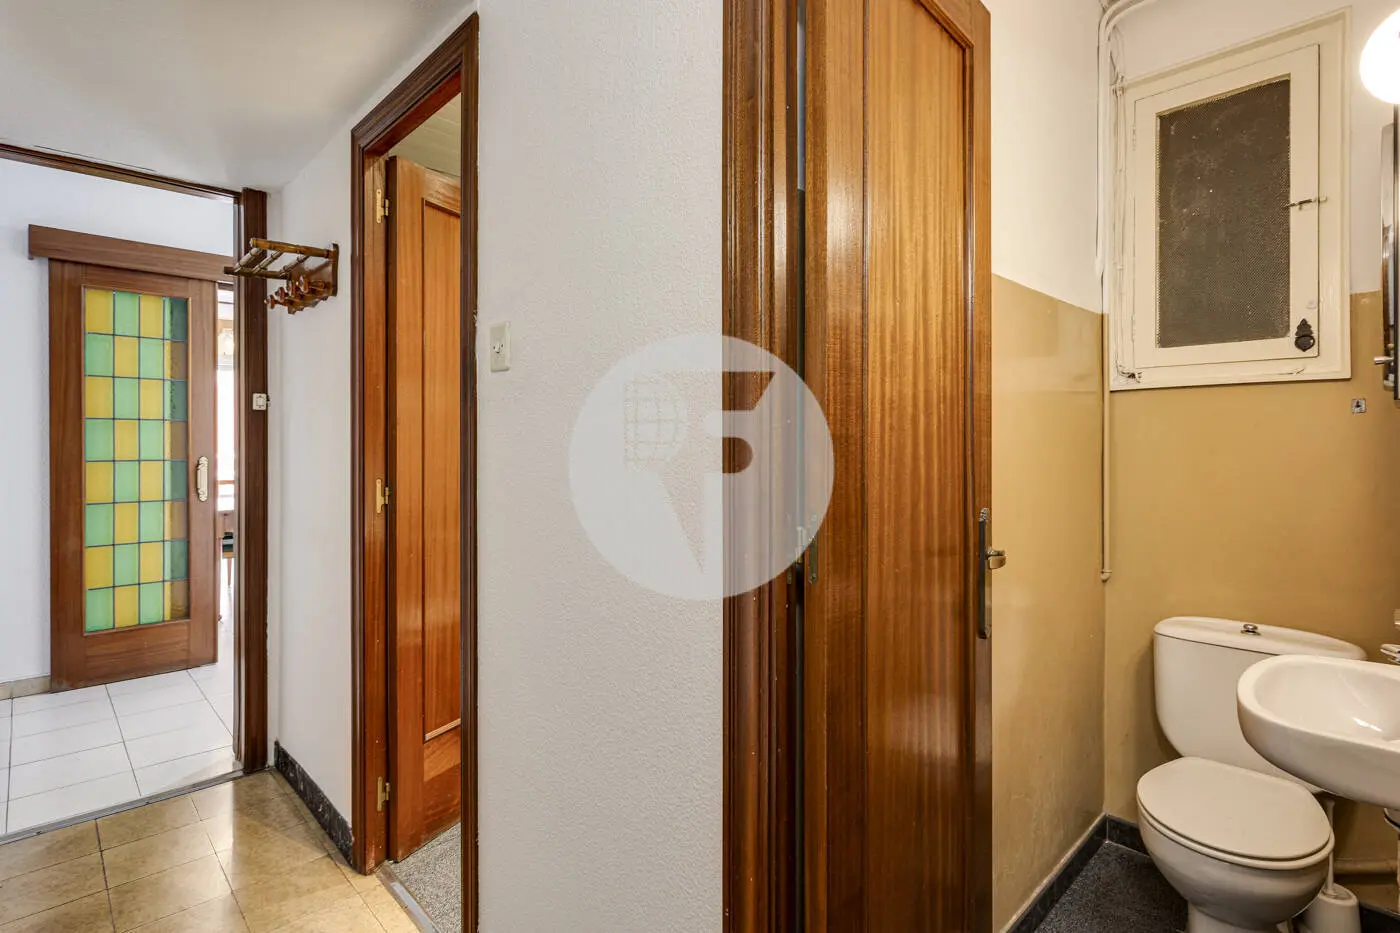 Piso de 3 habitaciones ubicado en el barrio de la Nova Esquerra de l'Eixample de Barcelona. 33